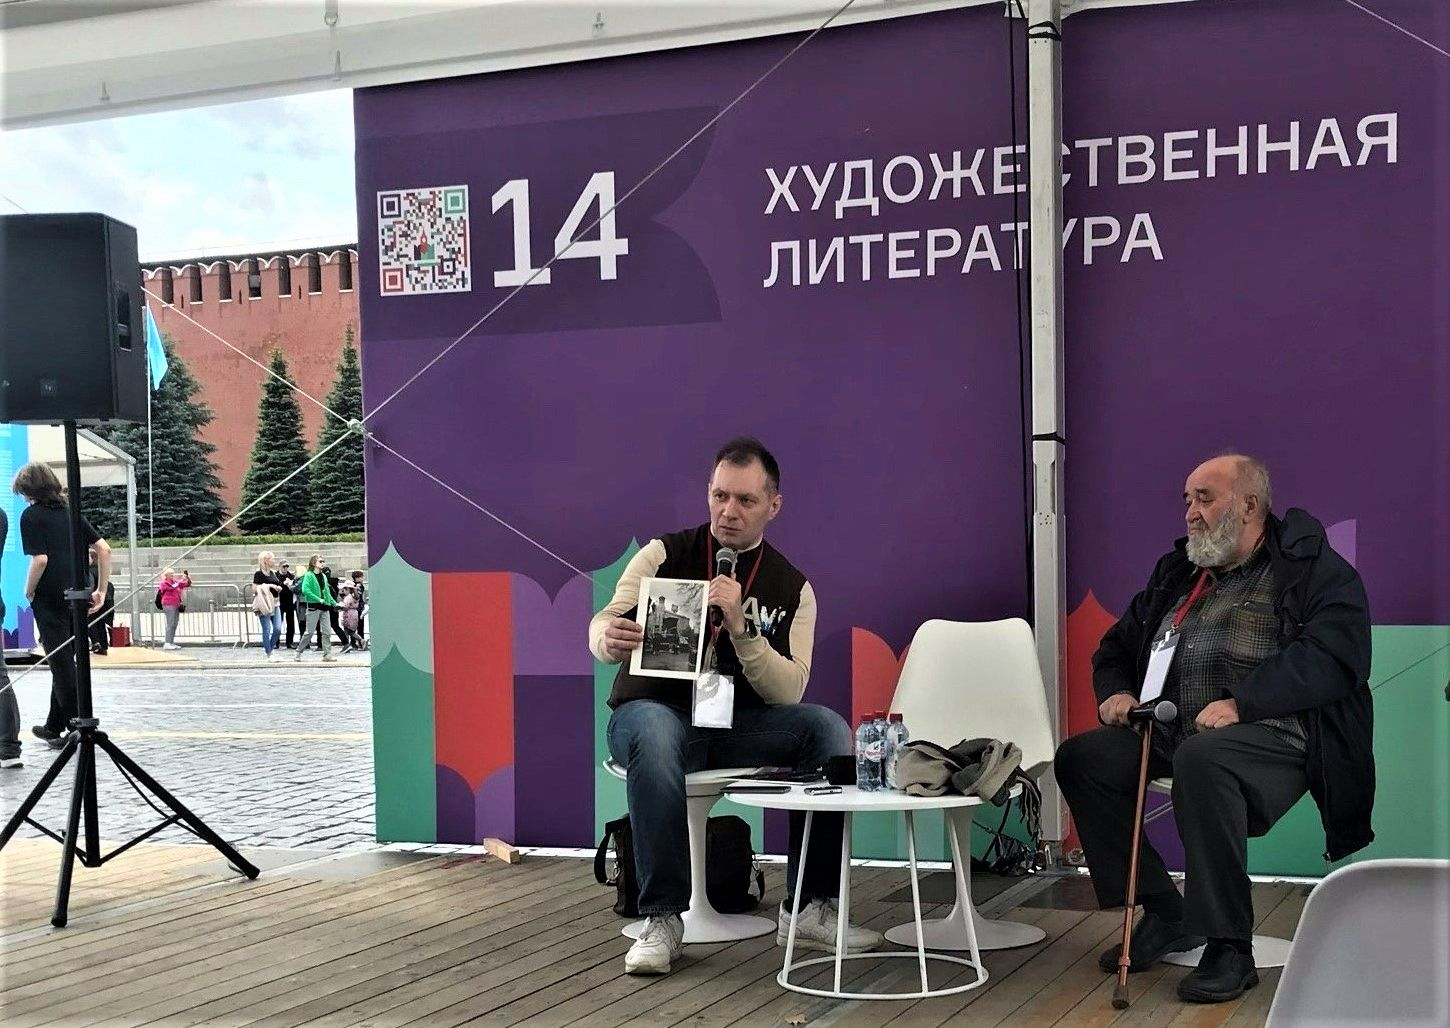 Даниил Духовской (слева) и Евгений Попов (справа) / Марина Масалитина